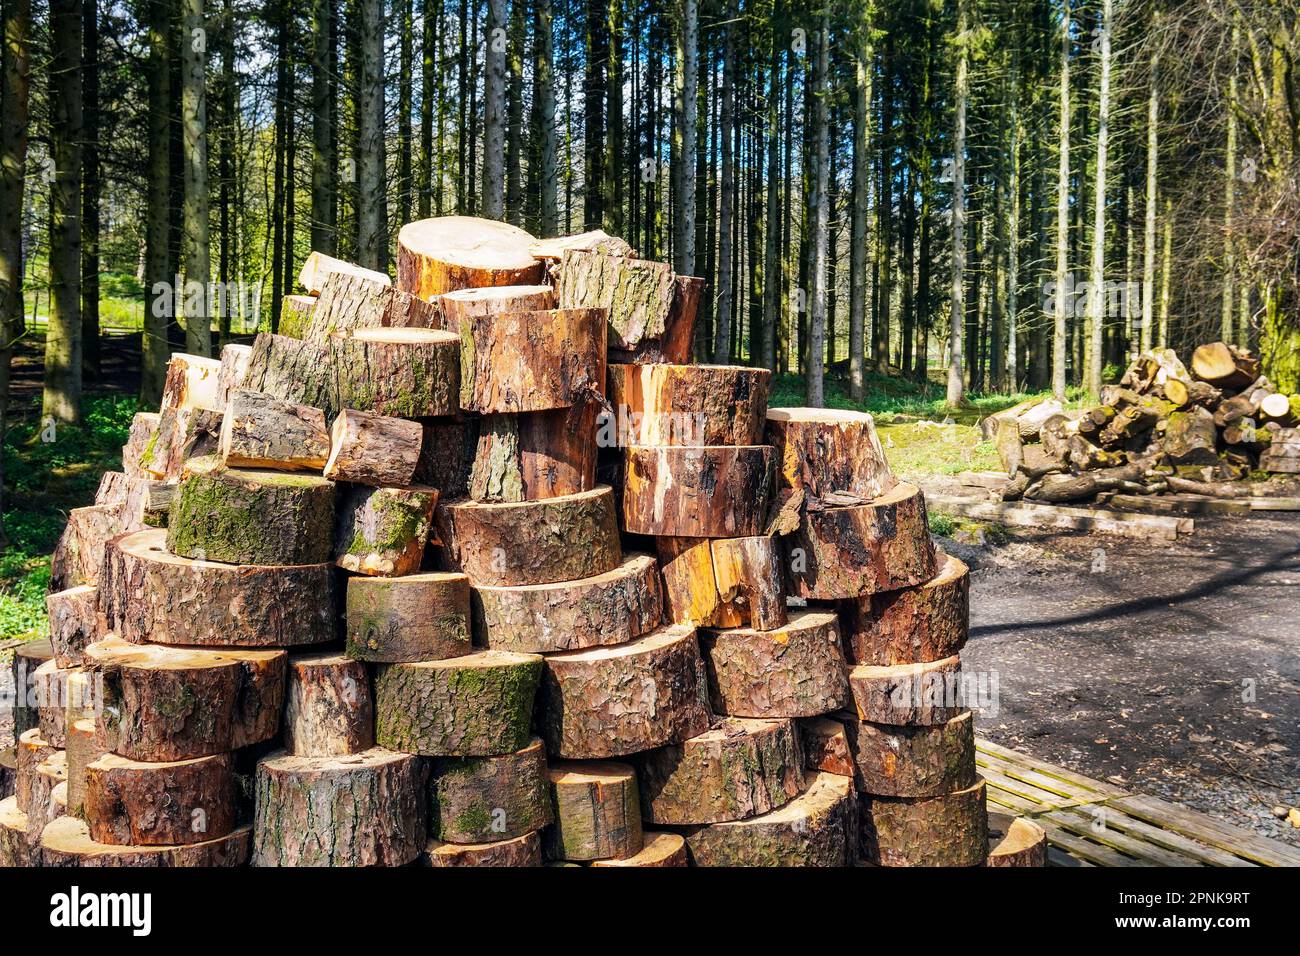 Gefällte Bäume und Holz, die in für den öffentlichen Verkauf geeignete Stämme geschnitten wurden, Kilmarnock, Schottland, Großbritannien Stockfoto